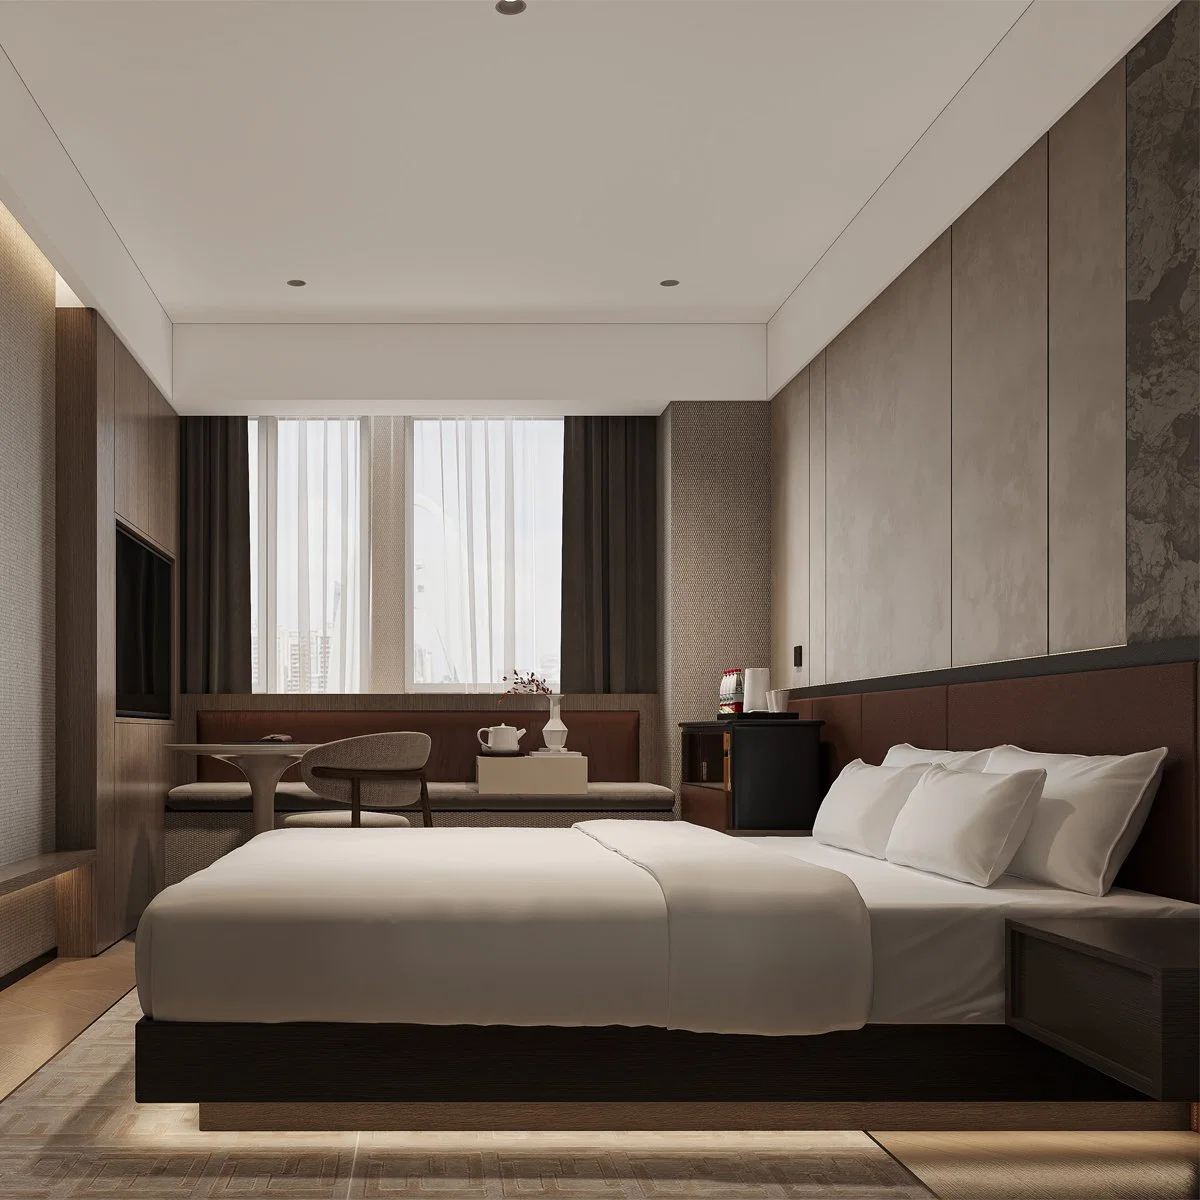 Comercial Holiday Inn Hotel Luxury Bedroom Sets Hotel de 5 estrellas Muebles